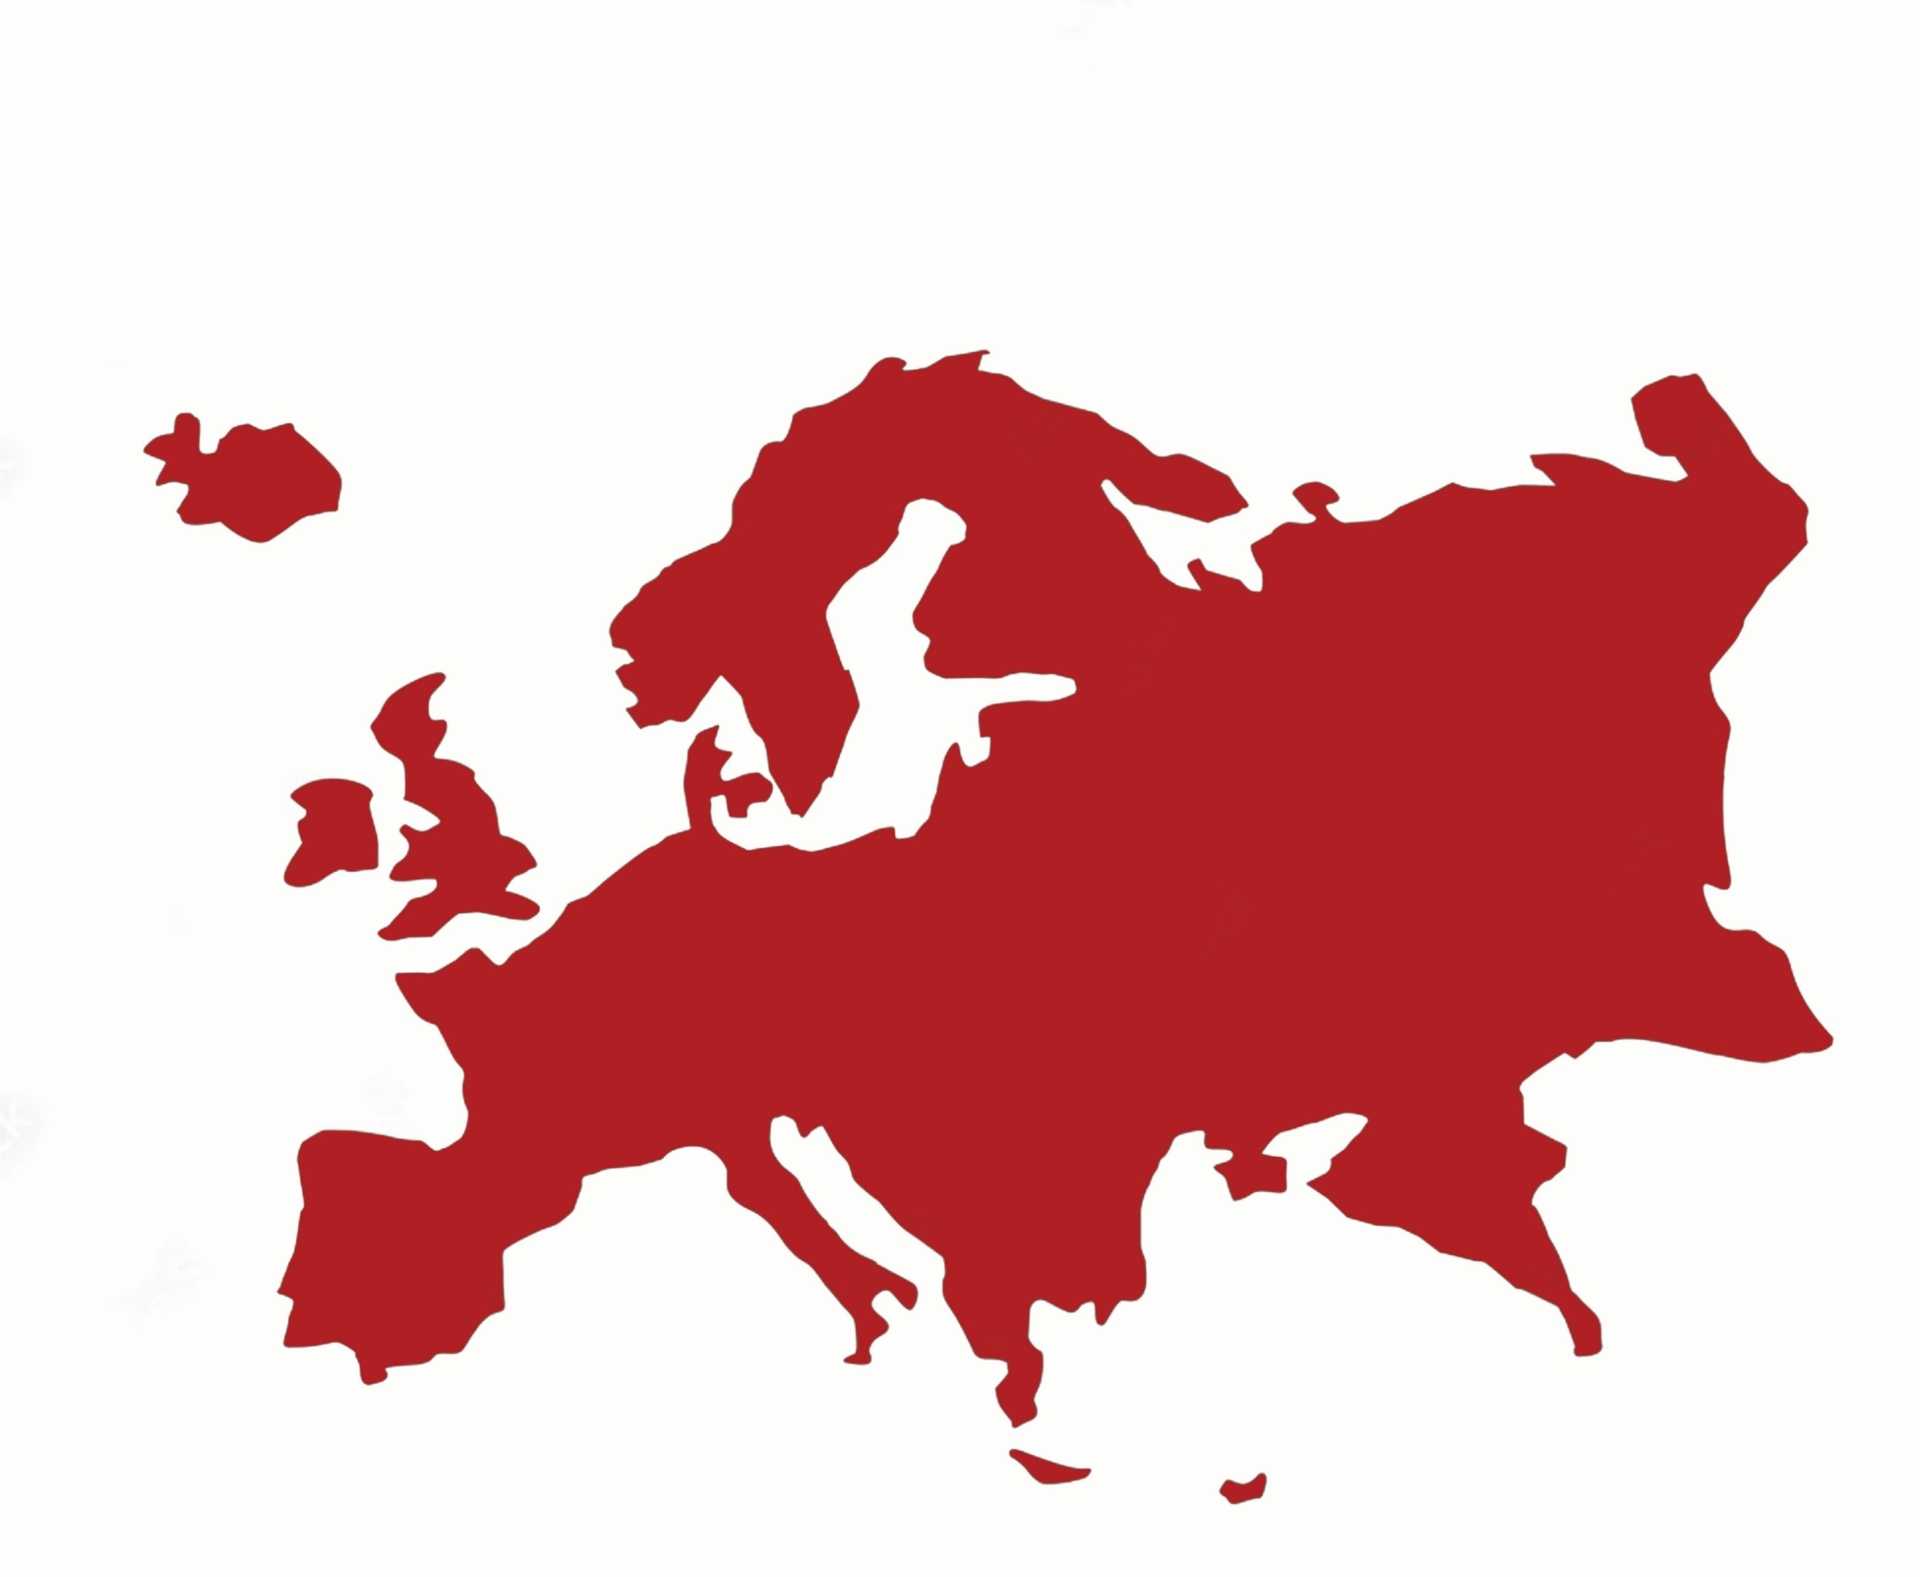 نقشه اروپا scaled